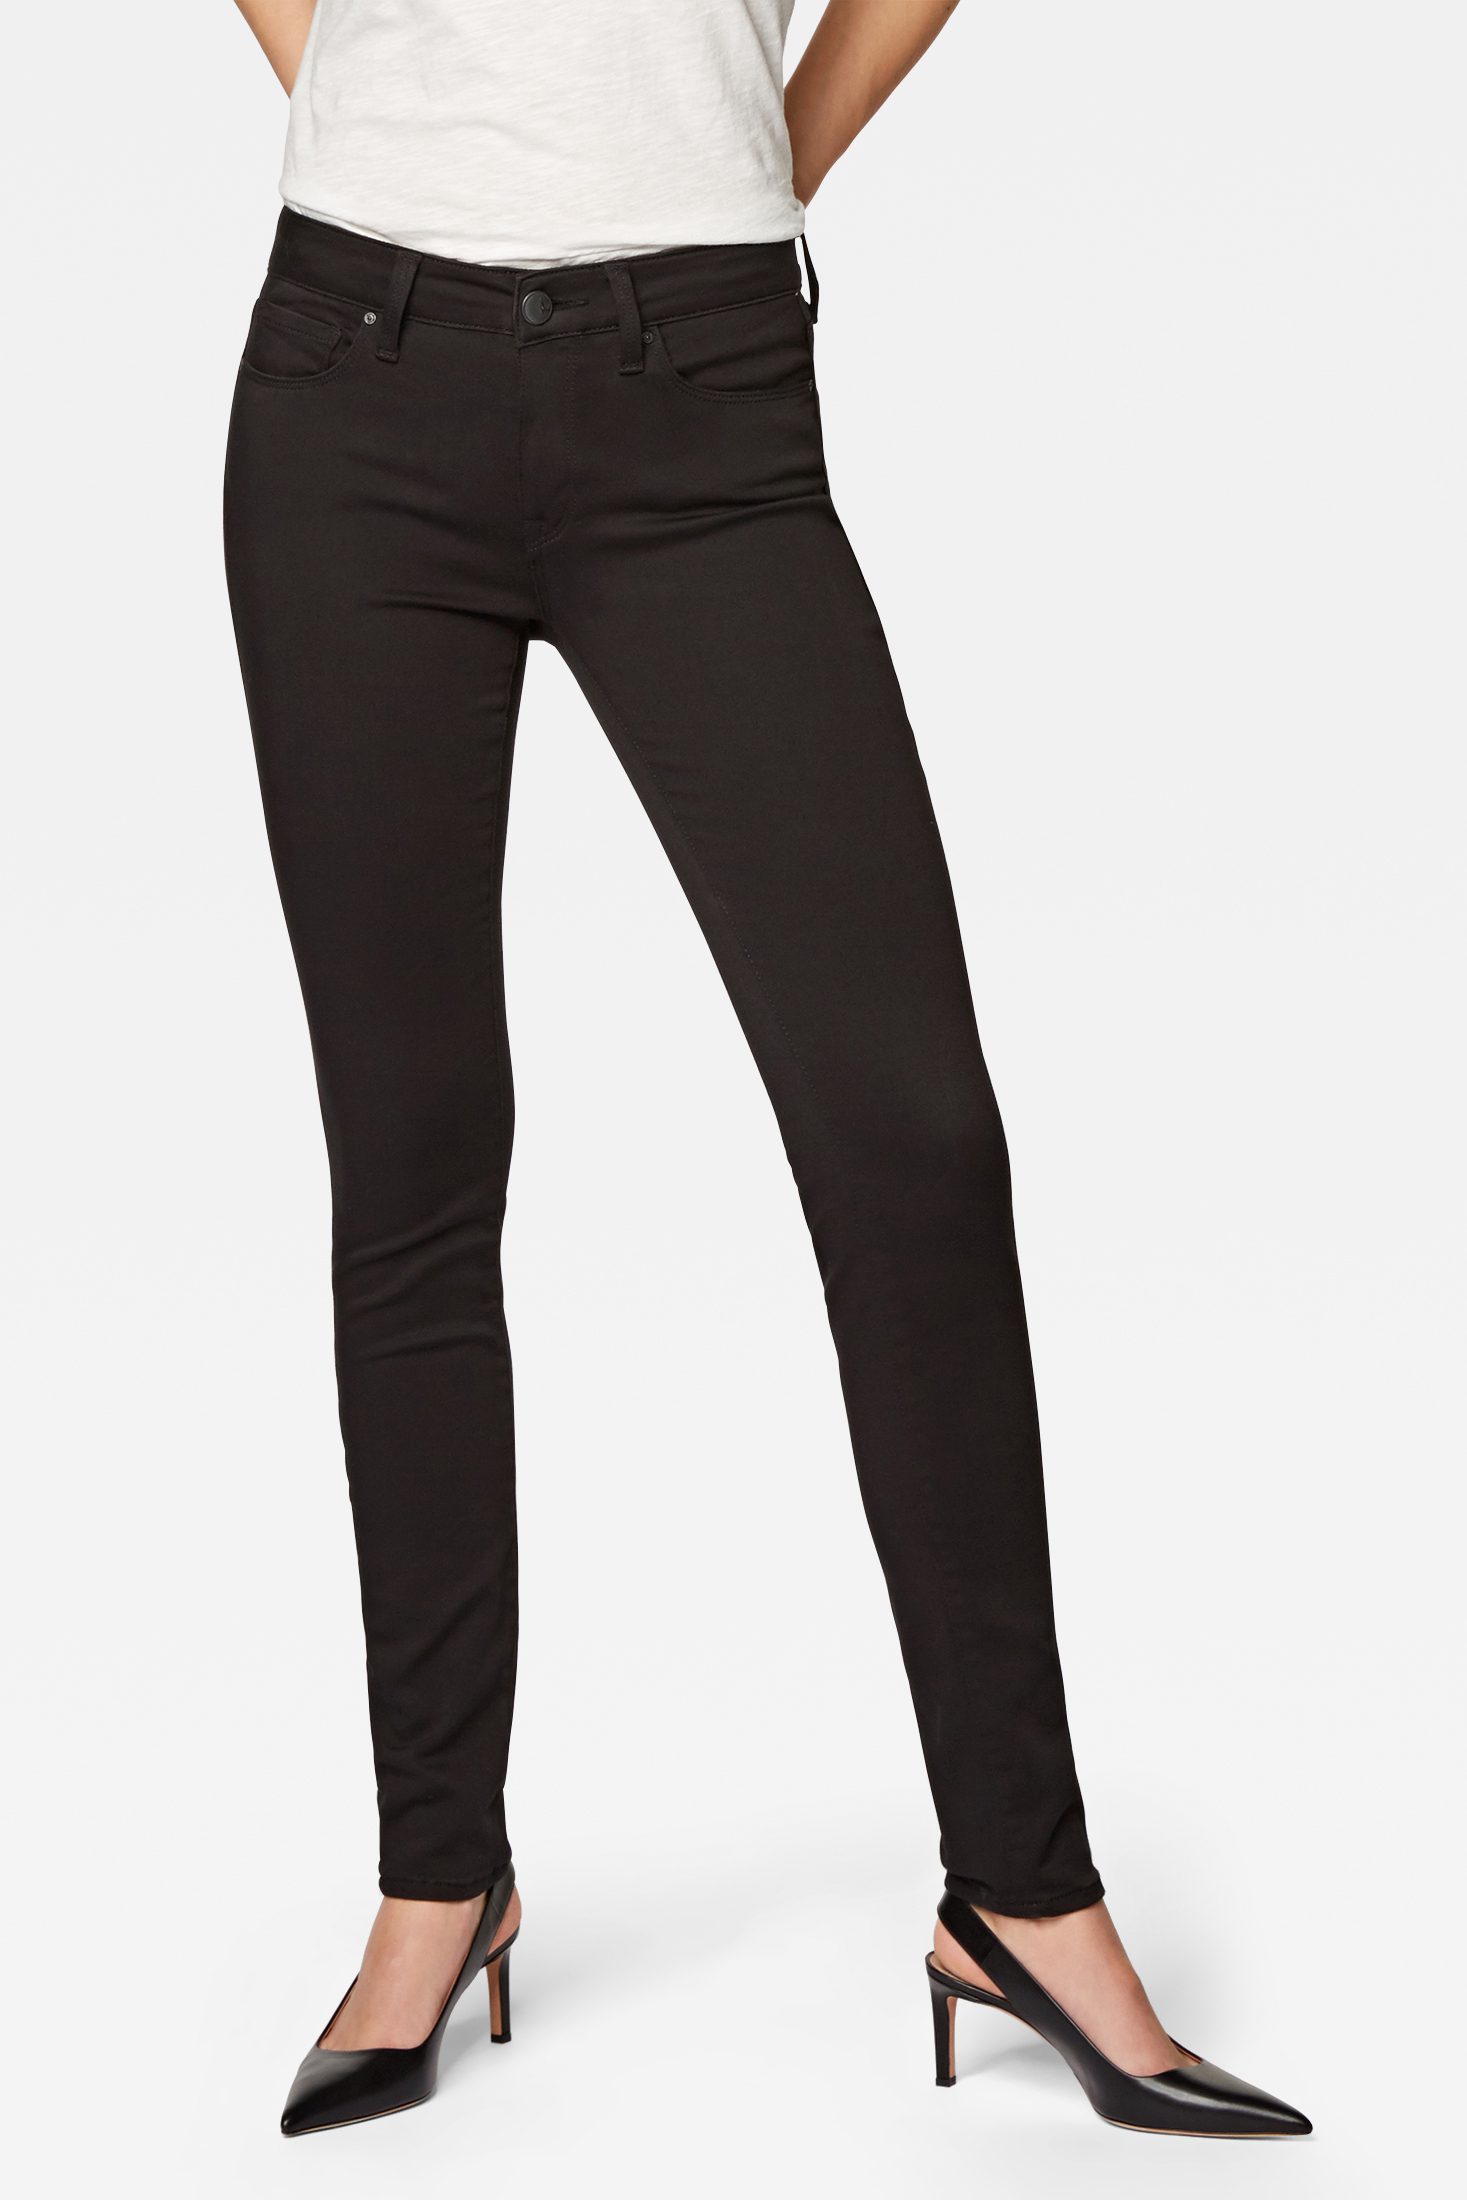 Mavi Adriana schwarze Super Skinny Jeans mit einer mittleren Leibhöhe